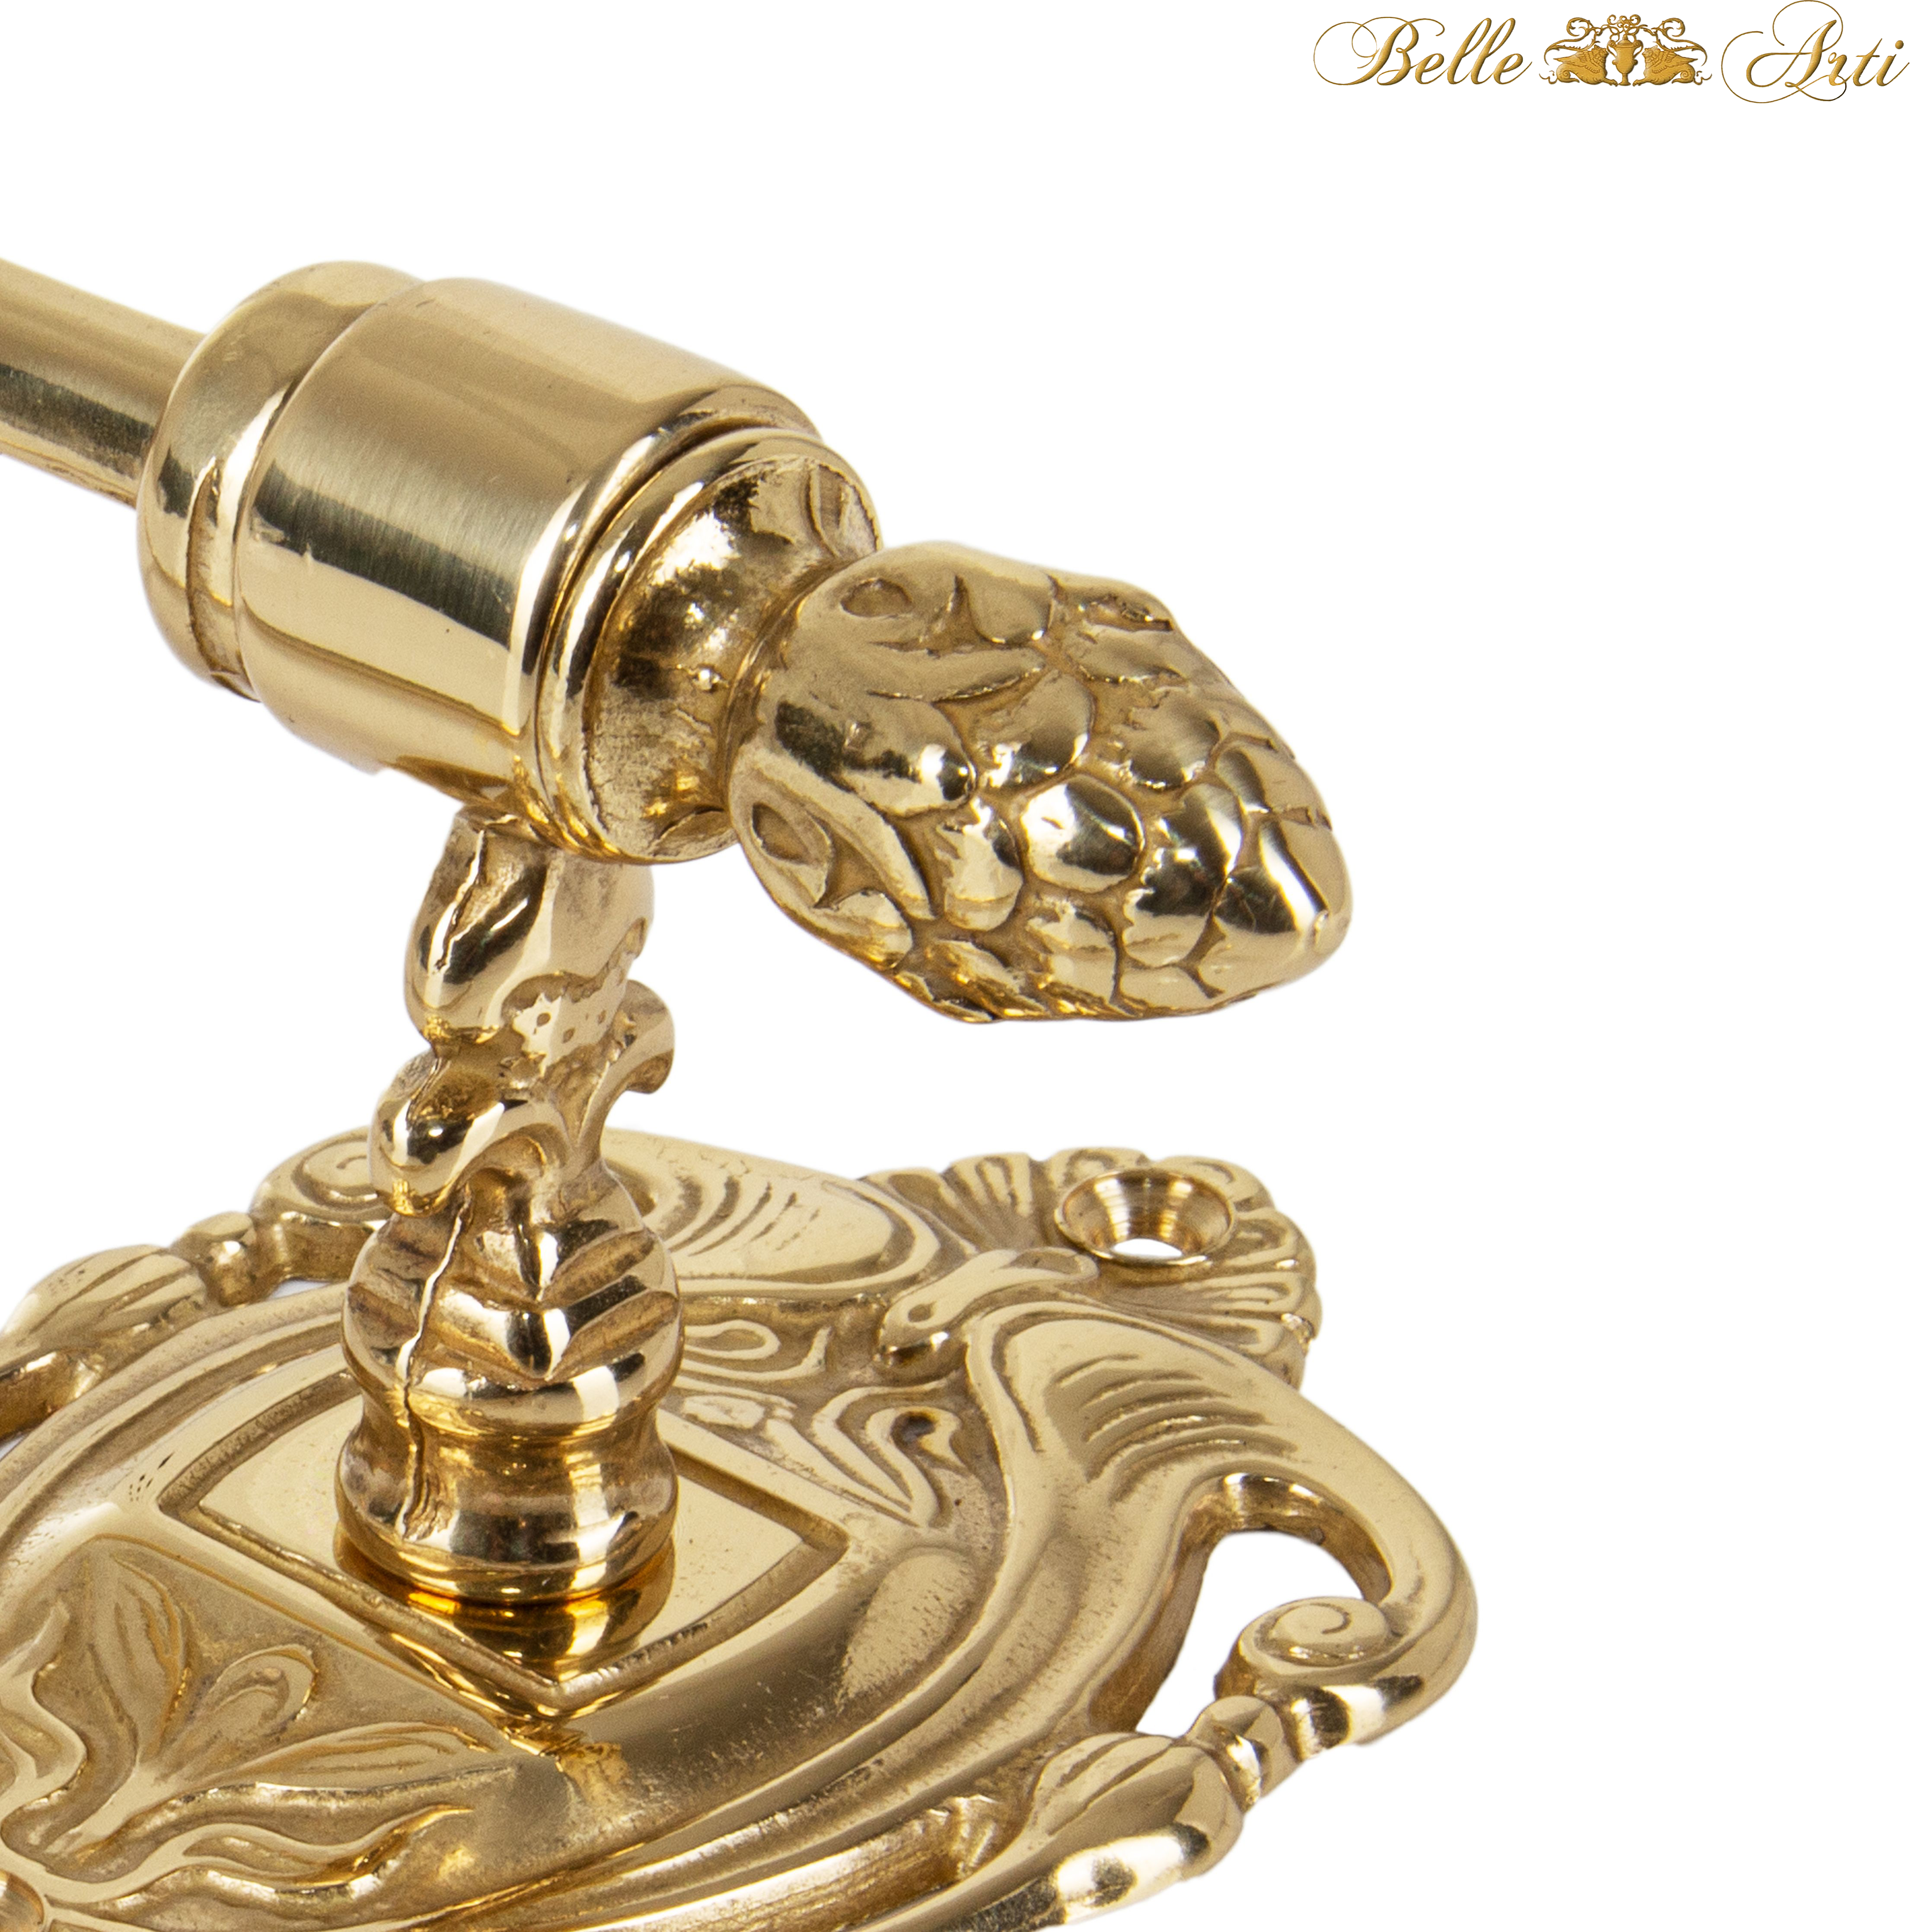 Luxus Toilettenpapierhalter in Vintage Look aus Messing - gold poliert